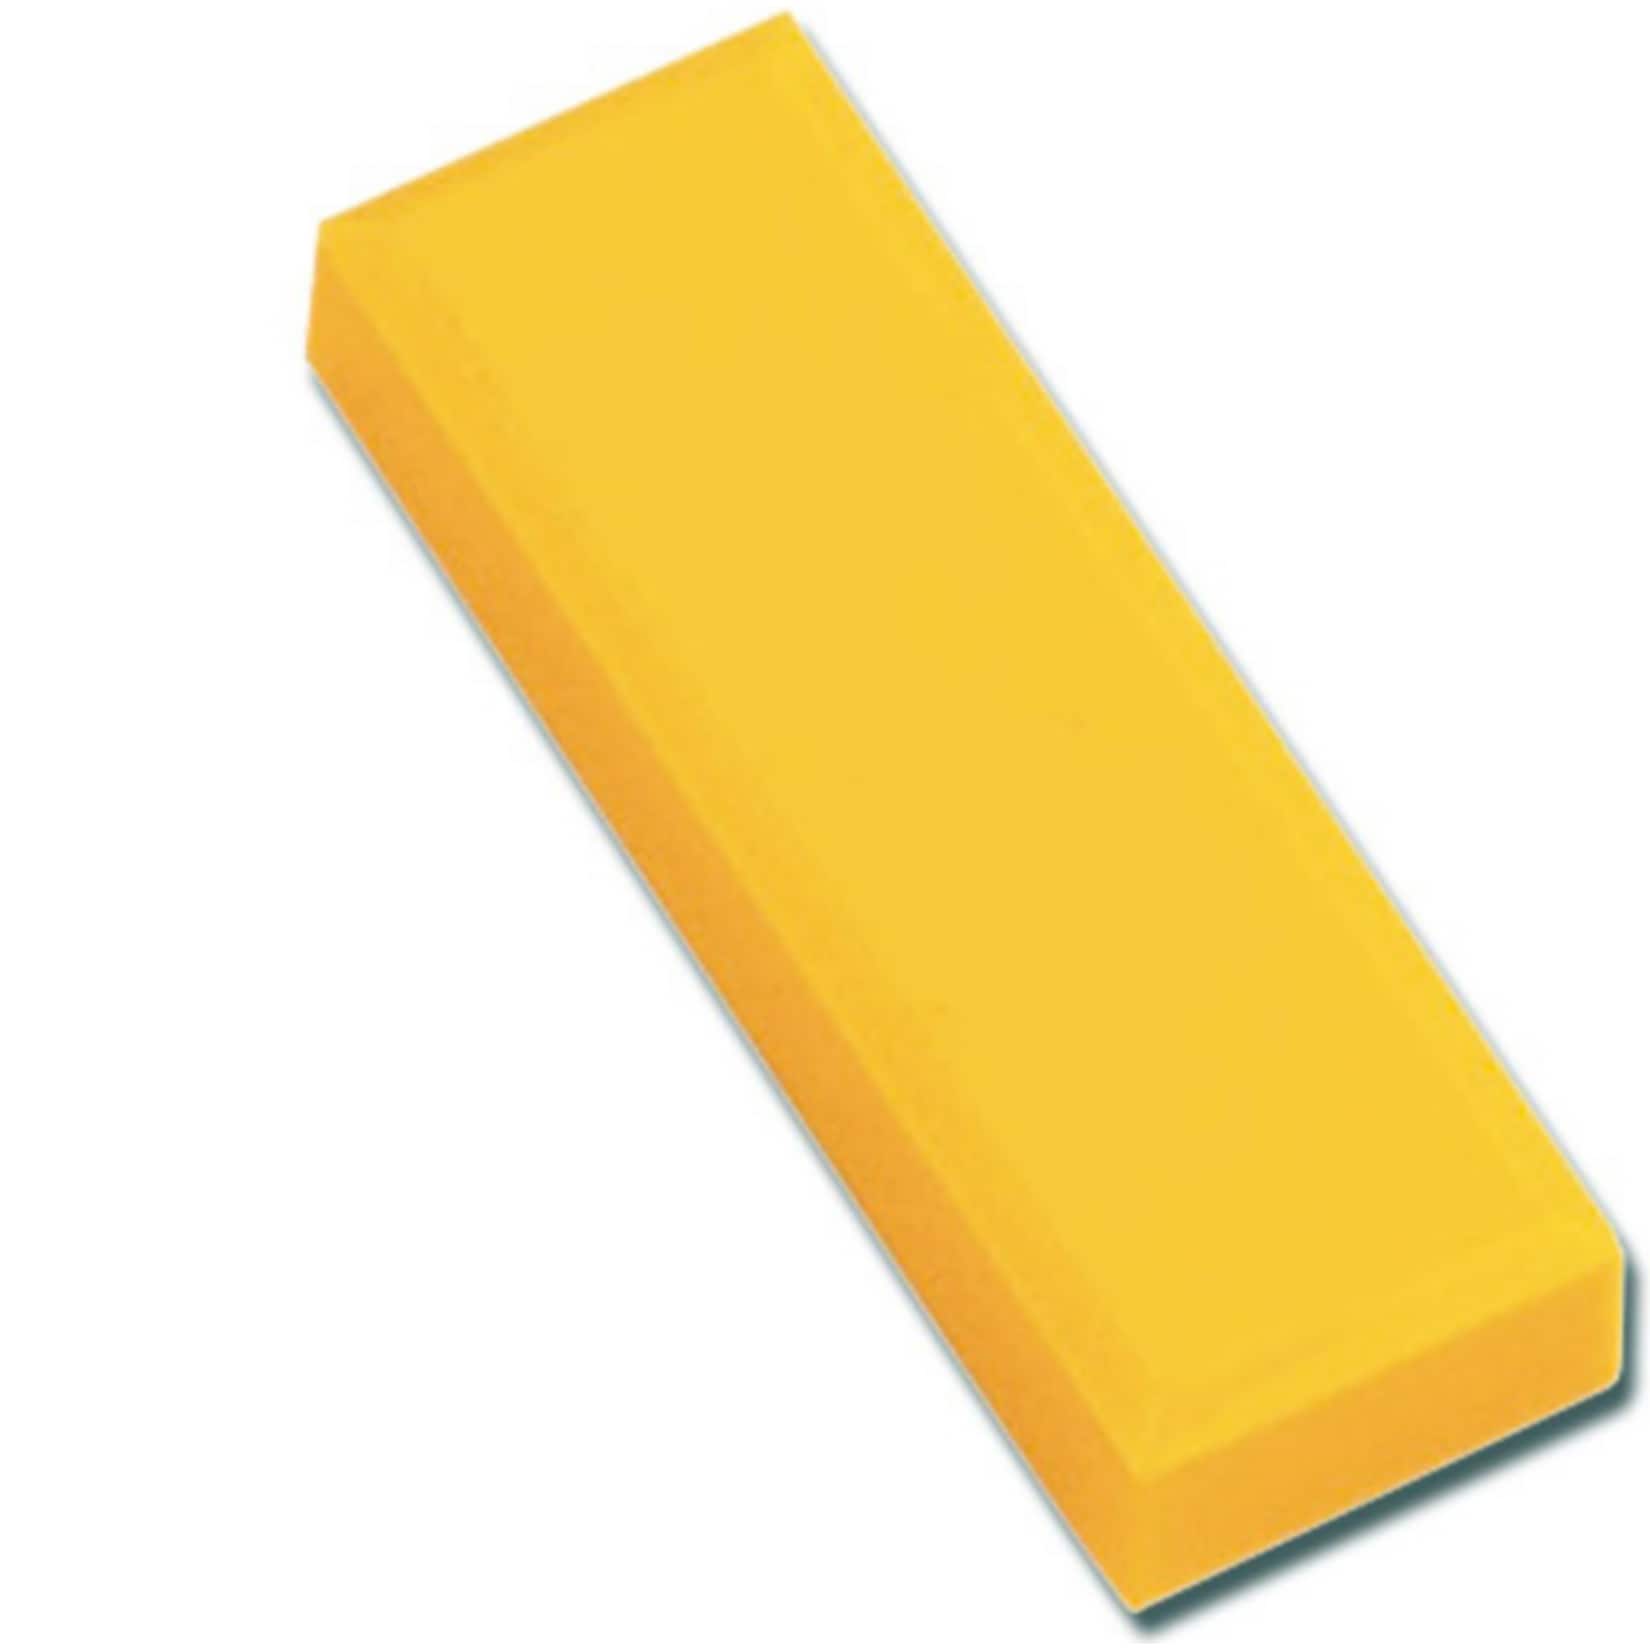 MAUL Facetterand-Magnet MAULpro, 53 x 18 x 10 mm, 1 kg Haftkraft, 20 St./Set - gelb